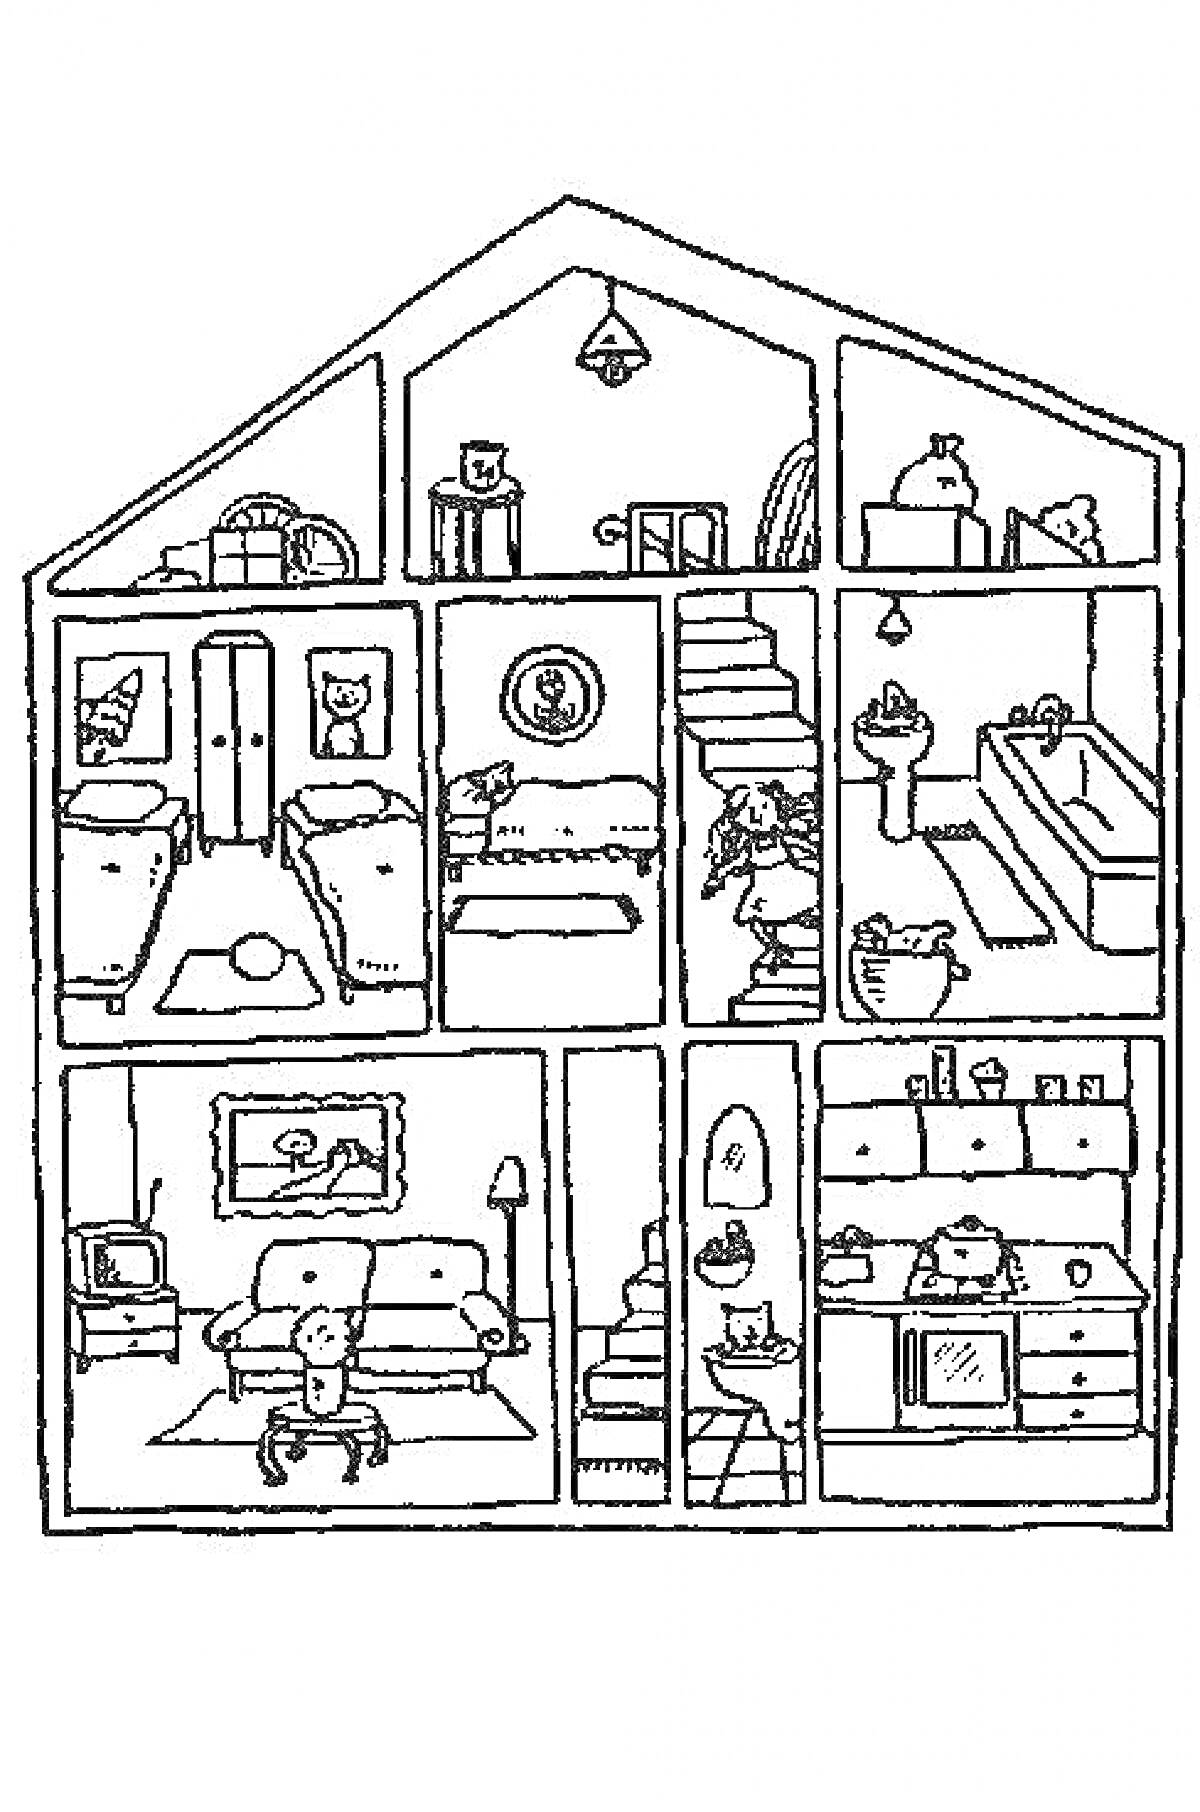 Домик внутри с домашними питомцами, мебелью, лестницами и домашней обстановкой